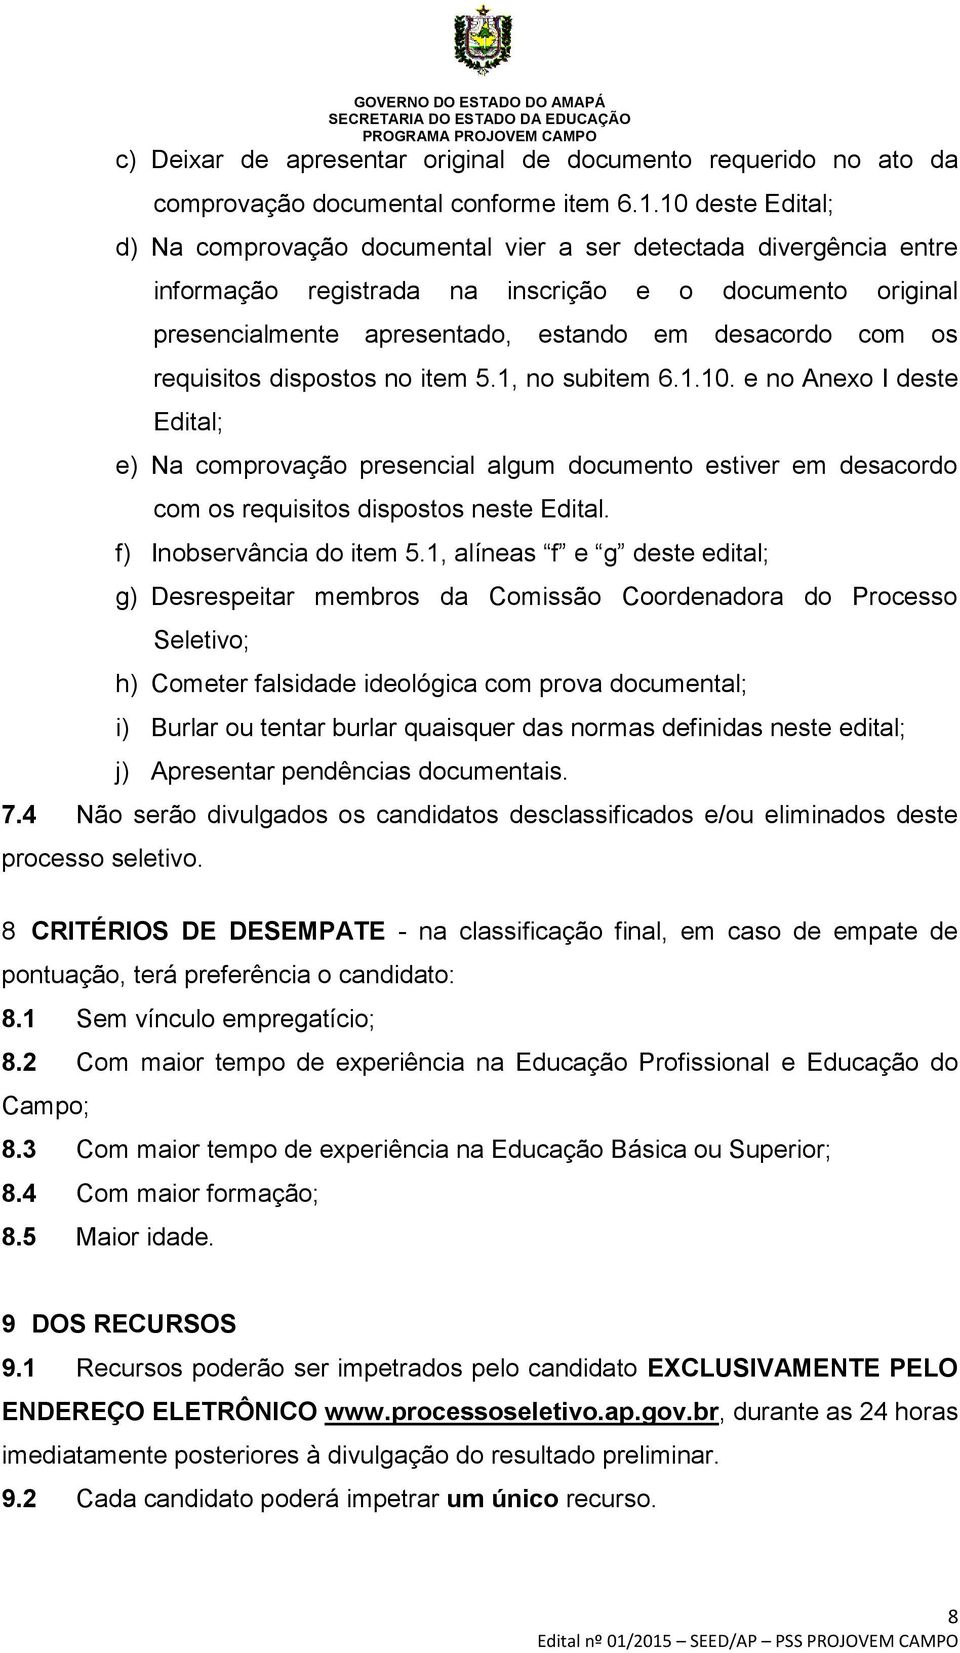 requisitos dispostos no item 5.1, no subitem 6.1.10. e no Anexo I deste Edital; e) Na comprovação presencial algum documento estiver em desacordo com os requisitos dispostos neste Edital.